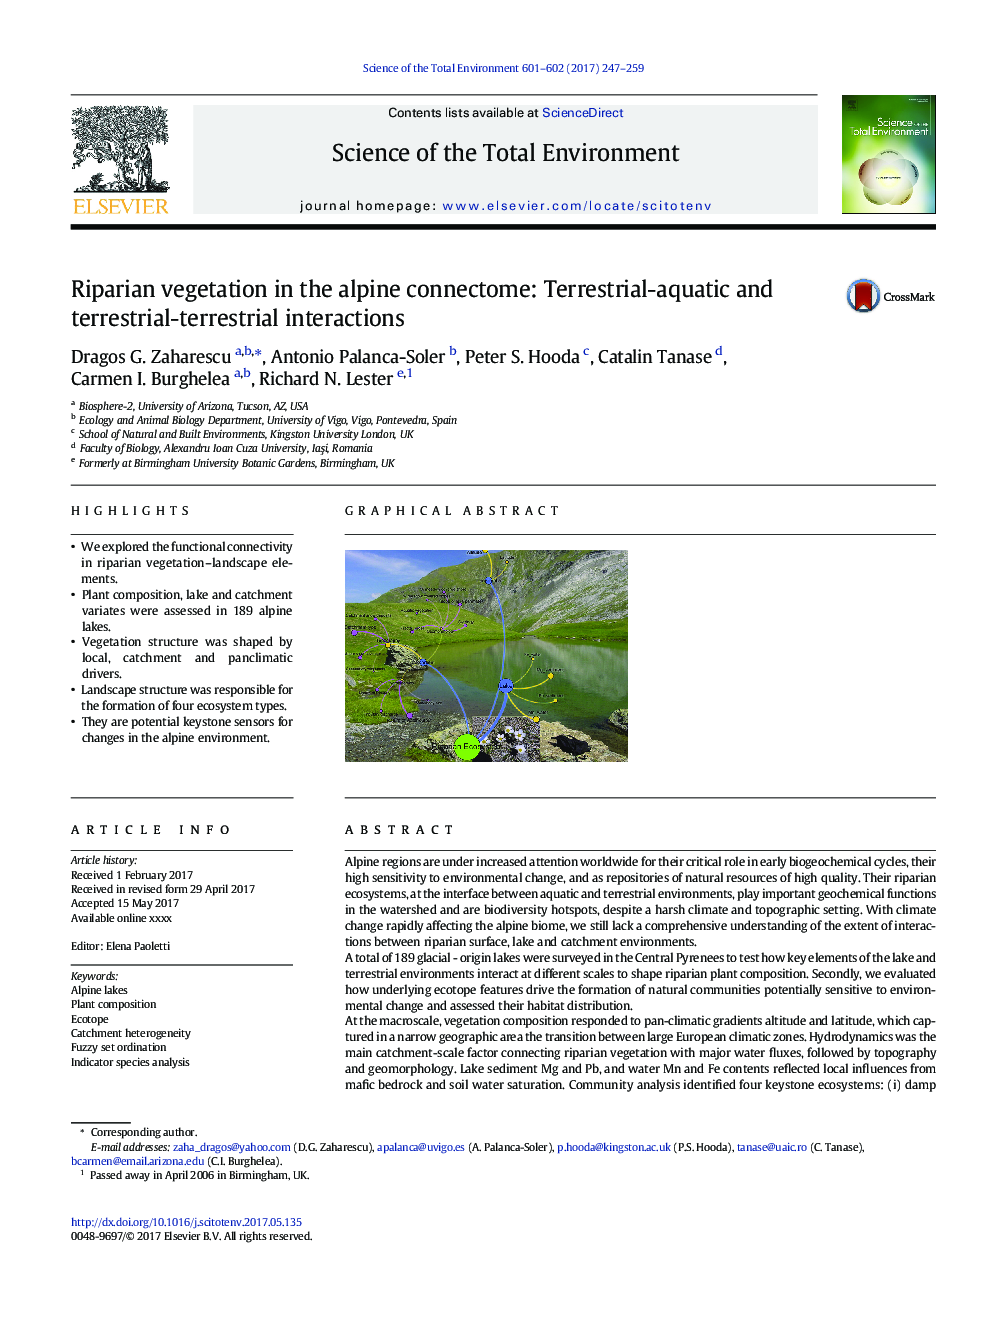 پوشش گیاهی در جزیره آلپاین: تعاملات دریایی-آبزی و زمینی-زمینی 